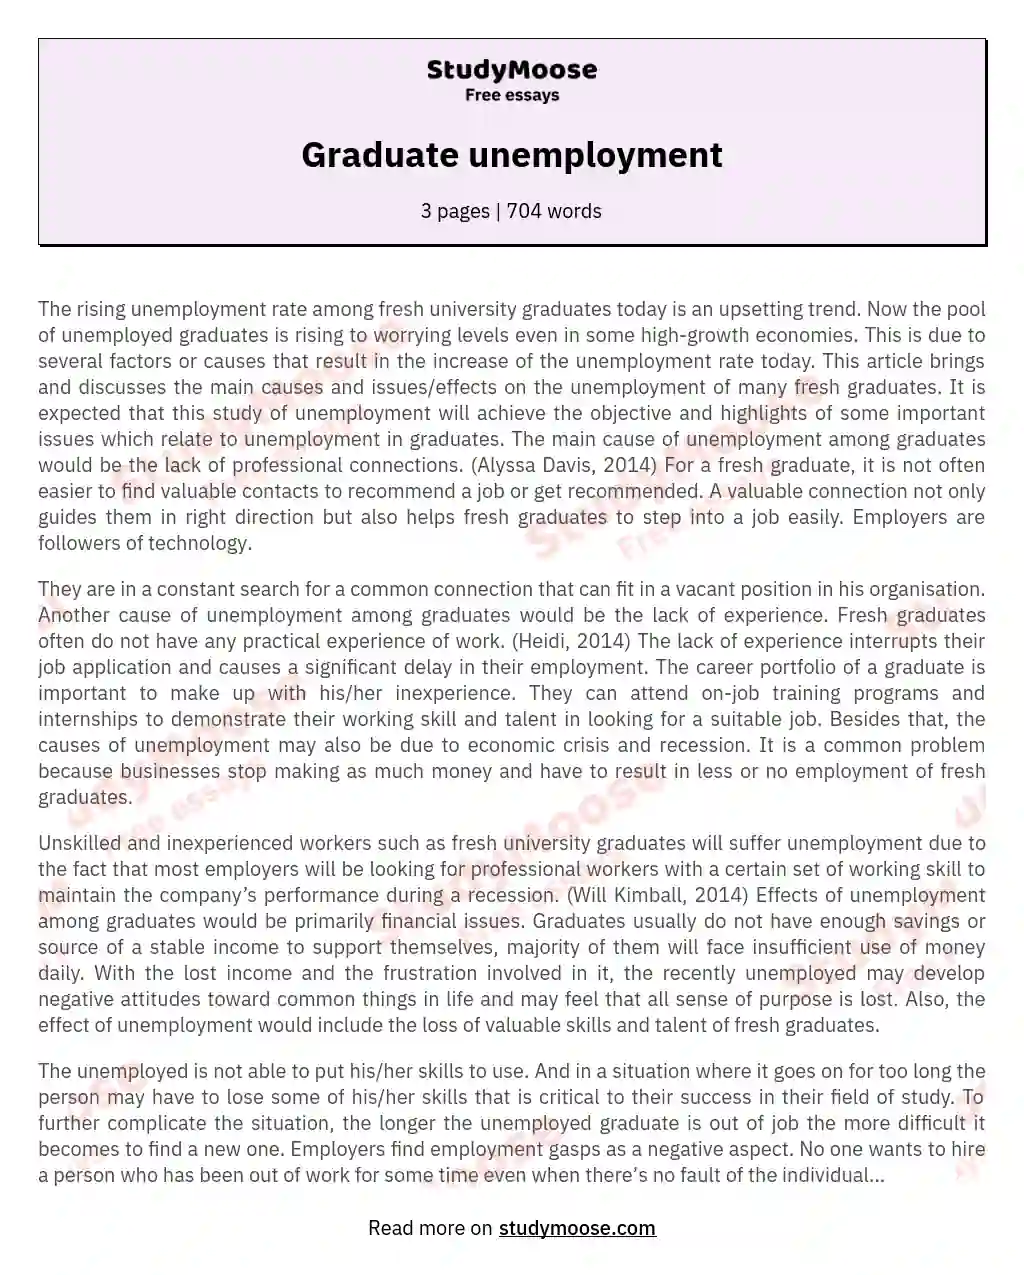 Graduate unemployment essay